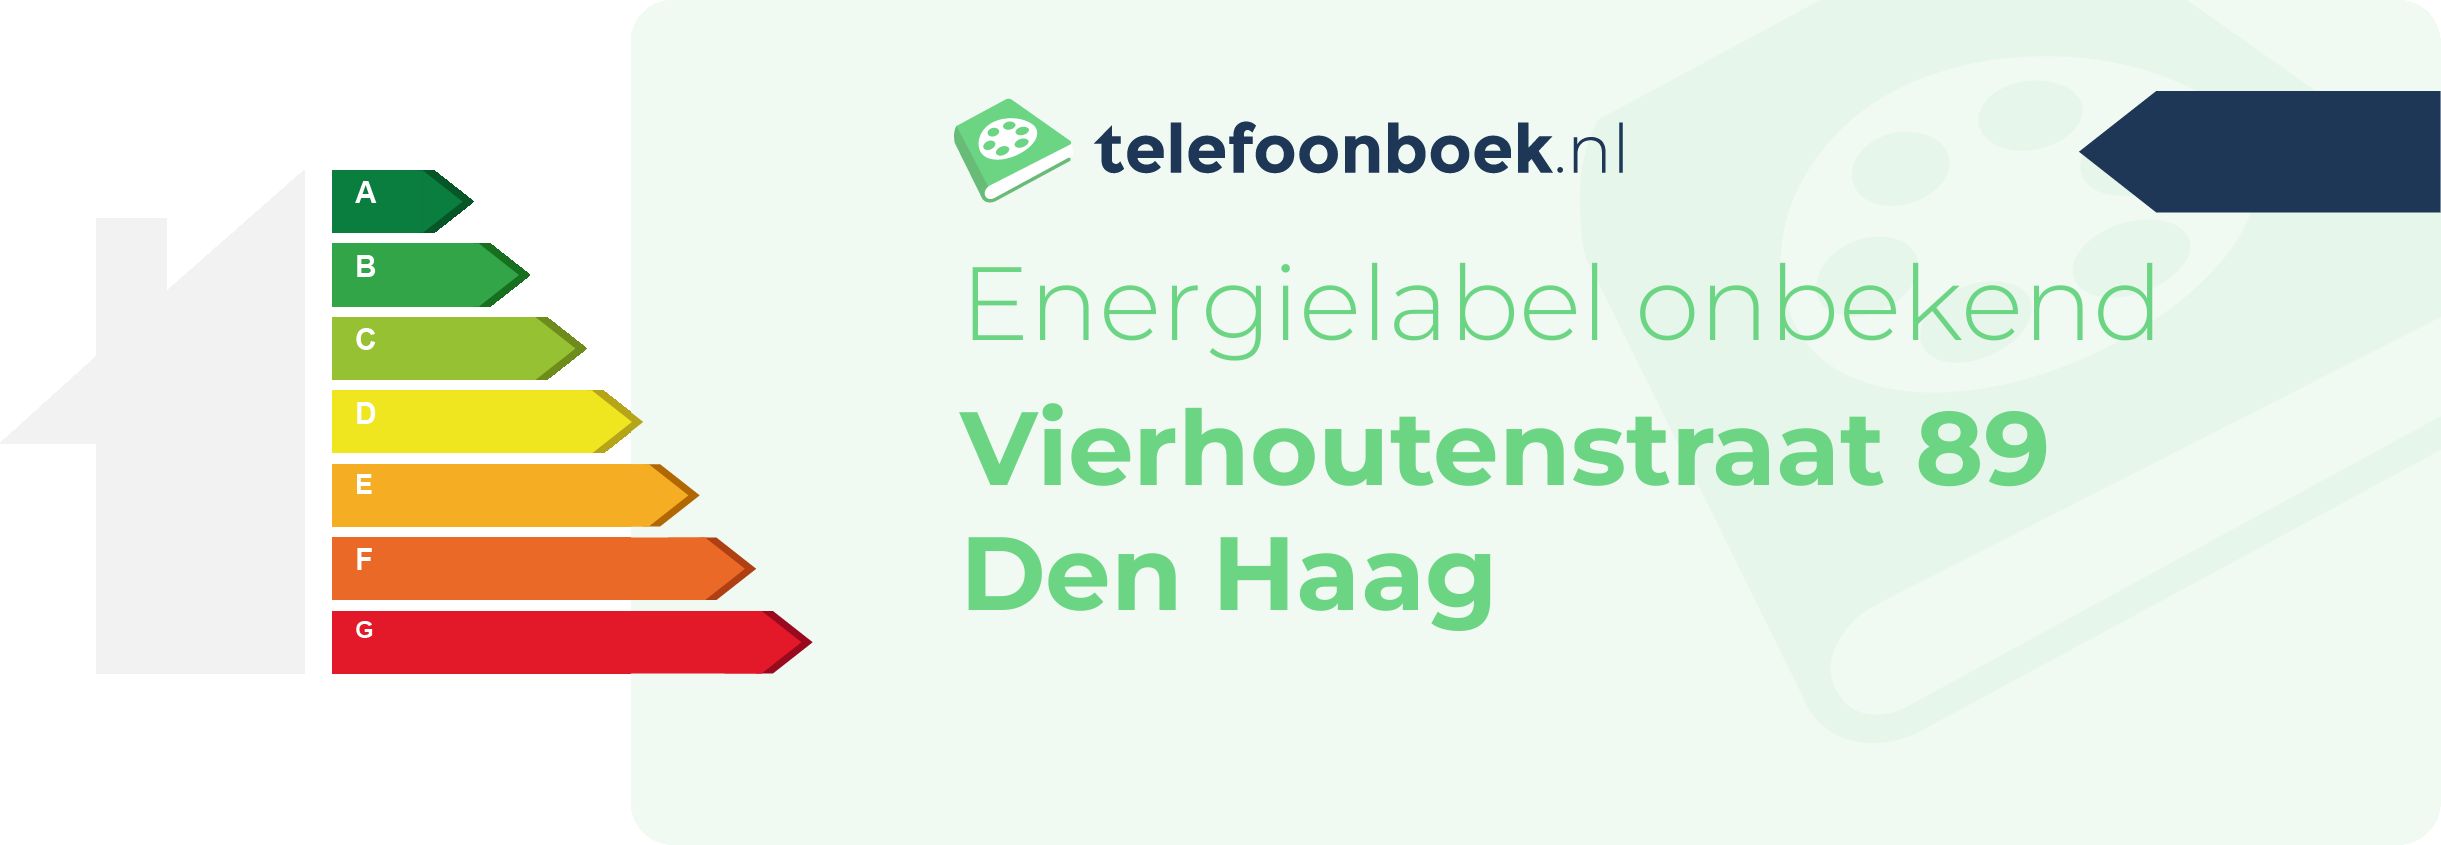 Energielabel Vierhoutenstraat 89 Den Haag